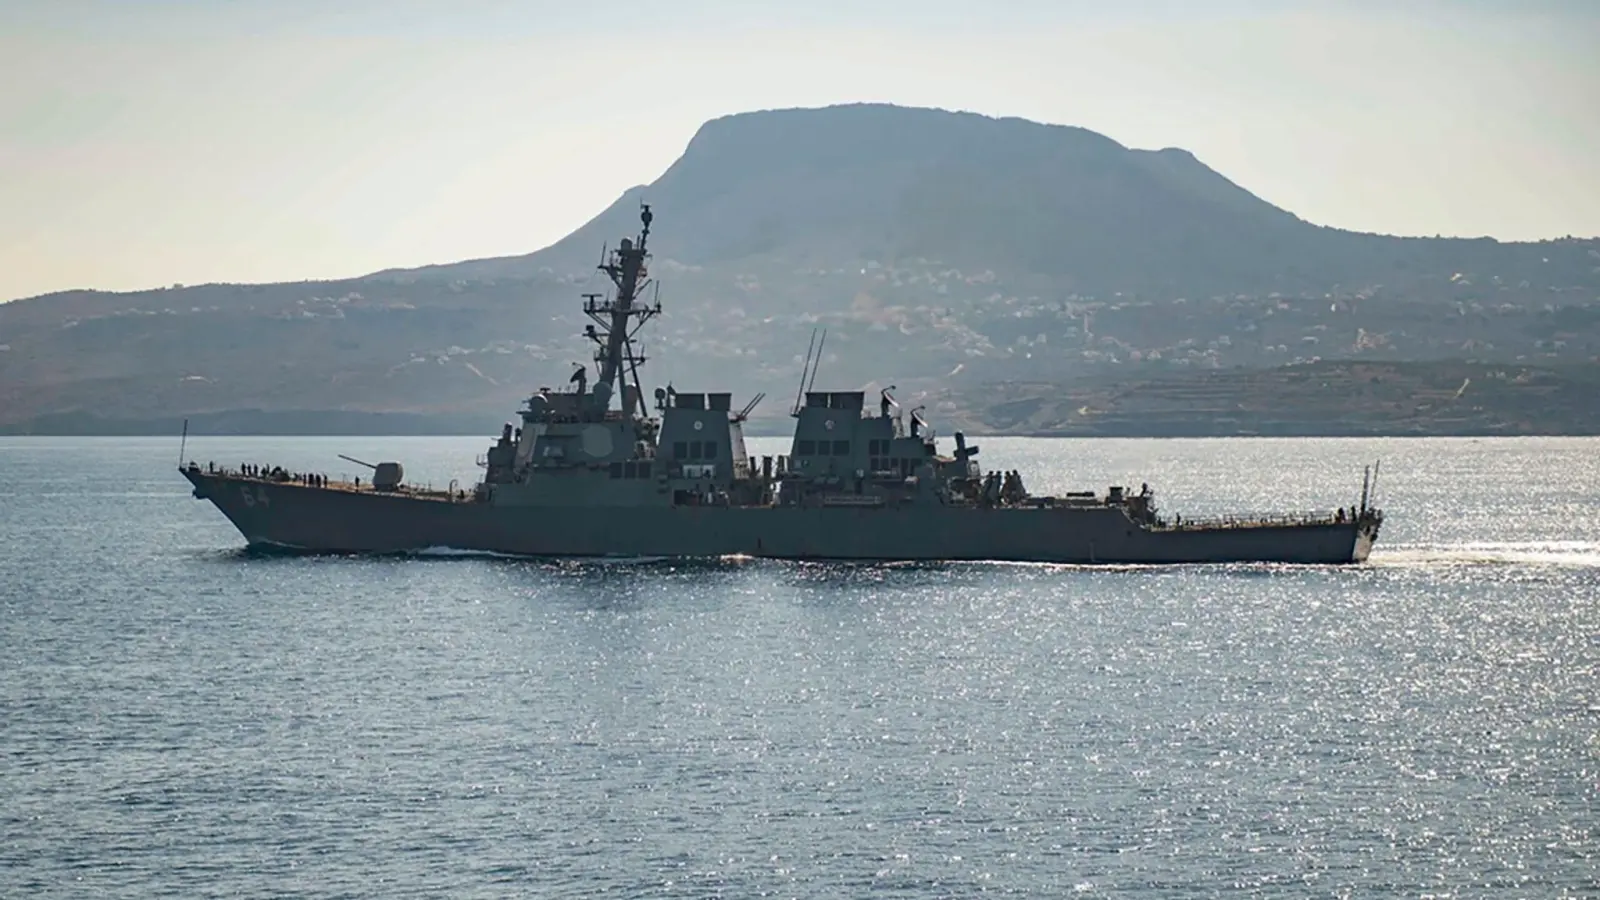 Der Marine-Zerstörer „USS Carney“ habe auf Notrufe der Frachter reagiert und Hilfe geleistet, hieß es. (Foto: Petty Officer 3rd Class Bill Dod/US Navy/AP/dpa)